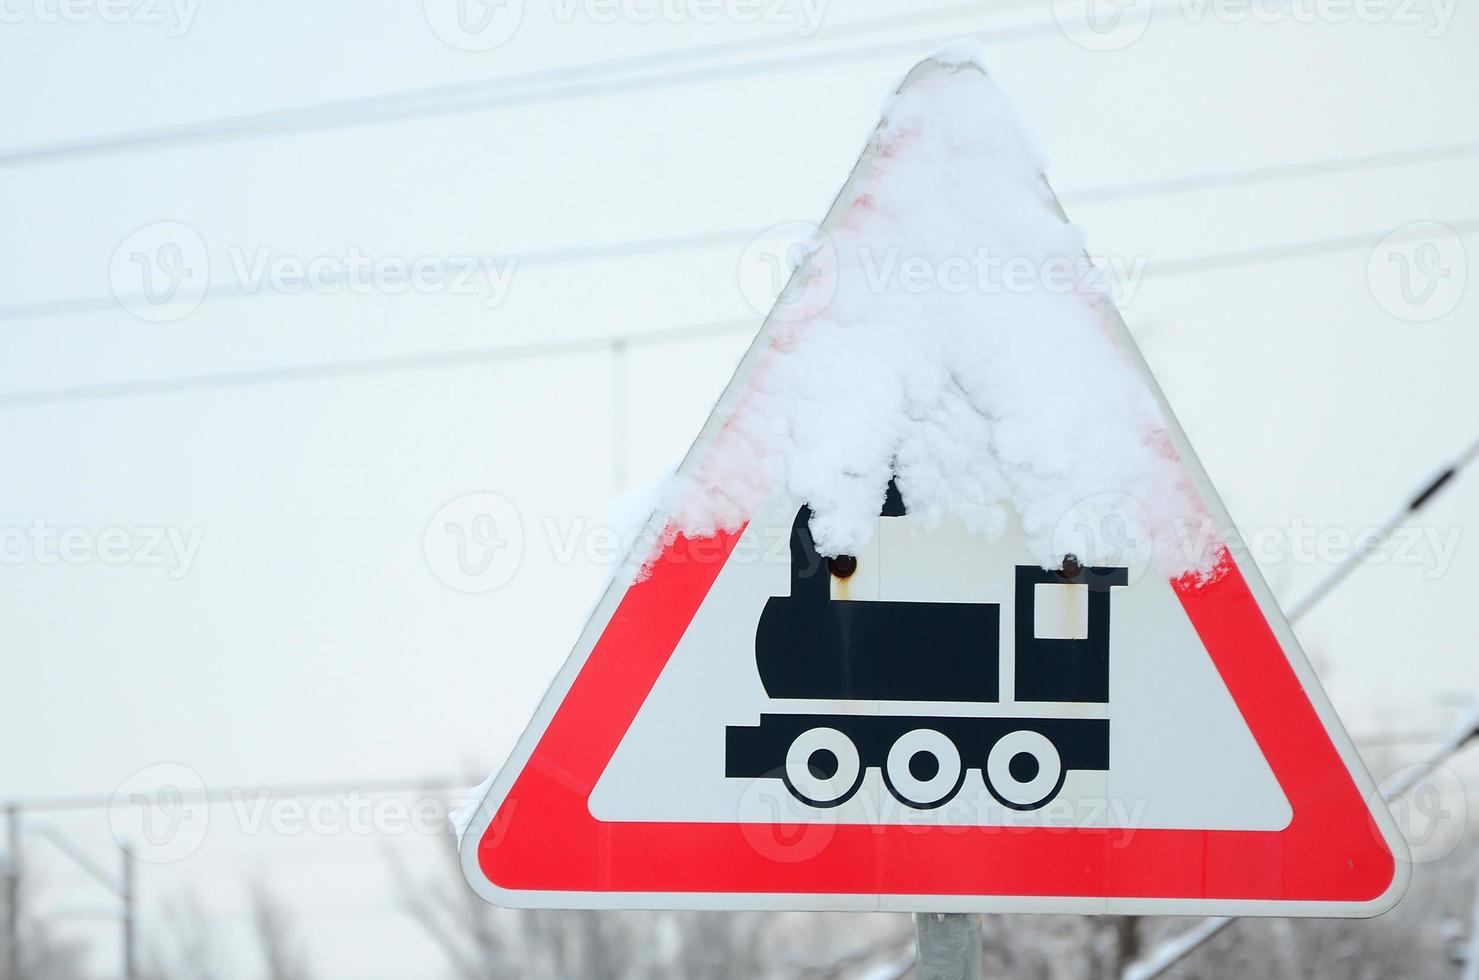 järnväg korsning utan barriär. en väg tecken skildrar ett gammal svart lokomotiv, belägen i en röd triangel foto